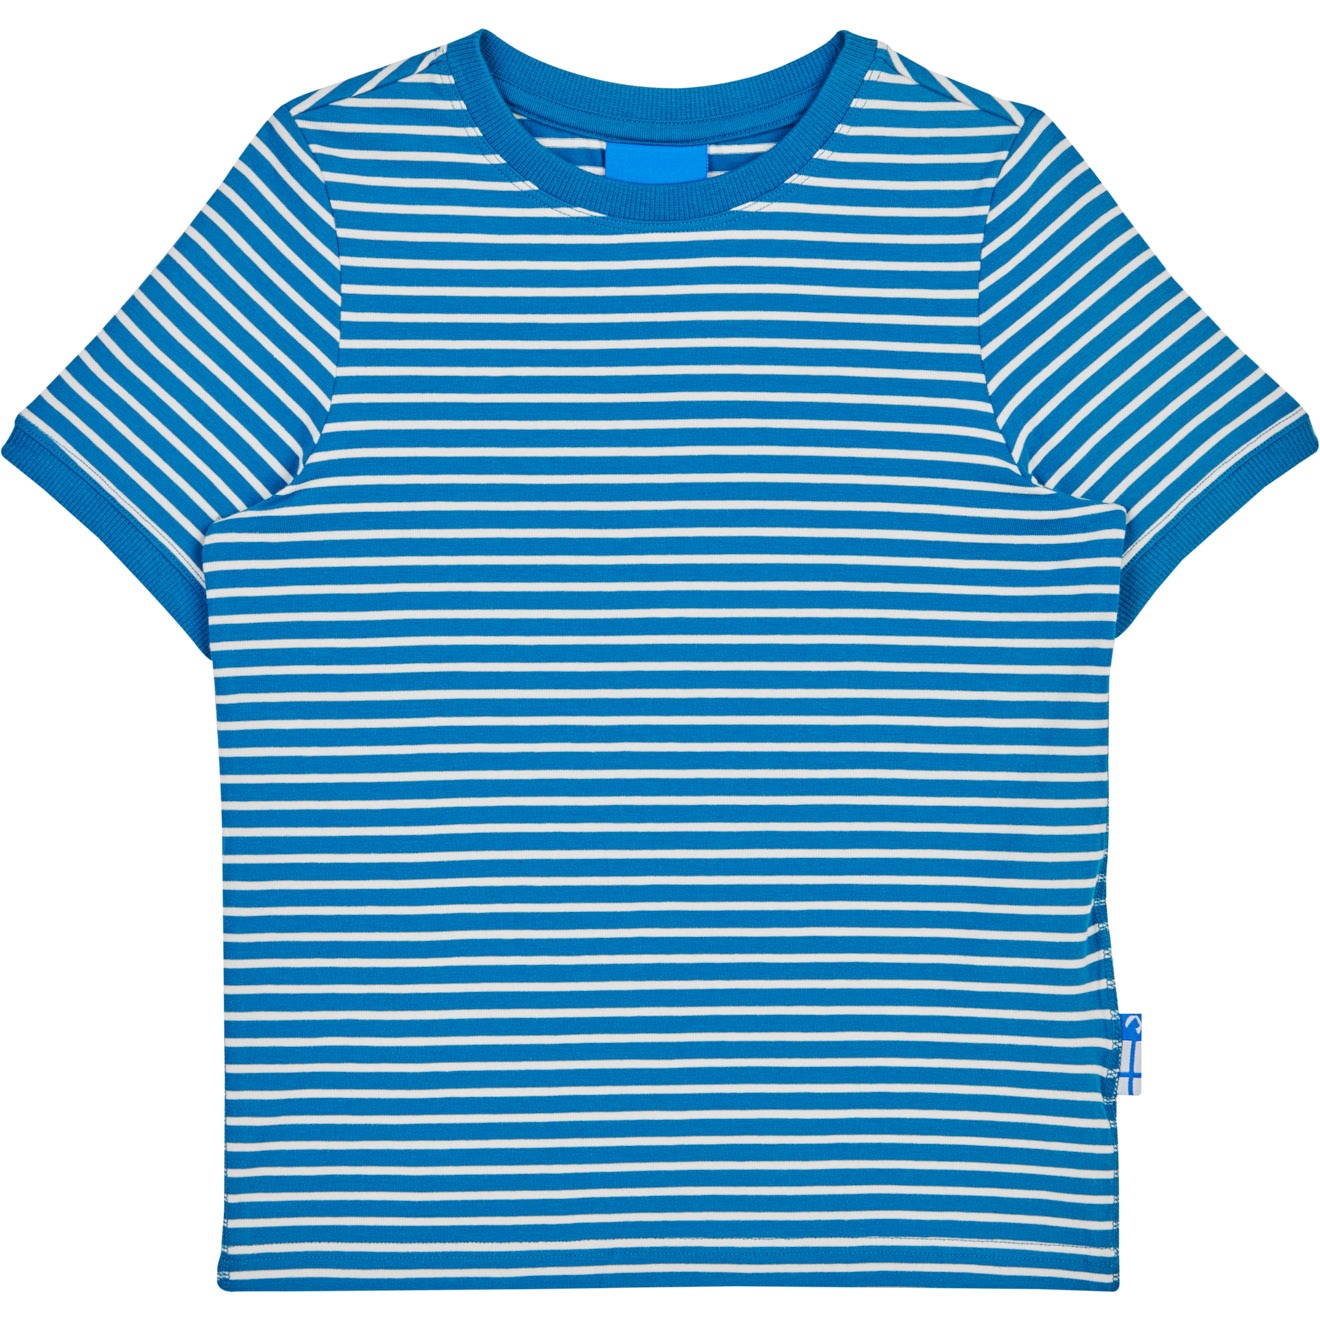 Produktbild von Finkid RENKAAT Kinder Basic T-Shirt - seaport/offwhite